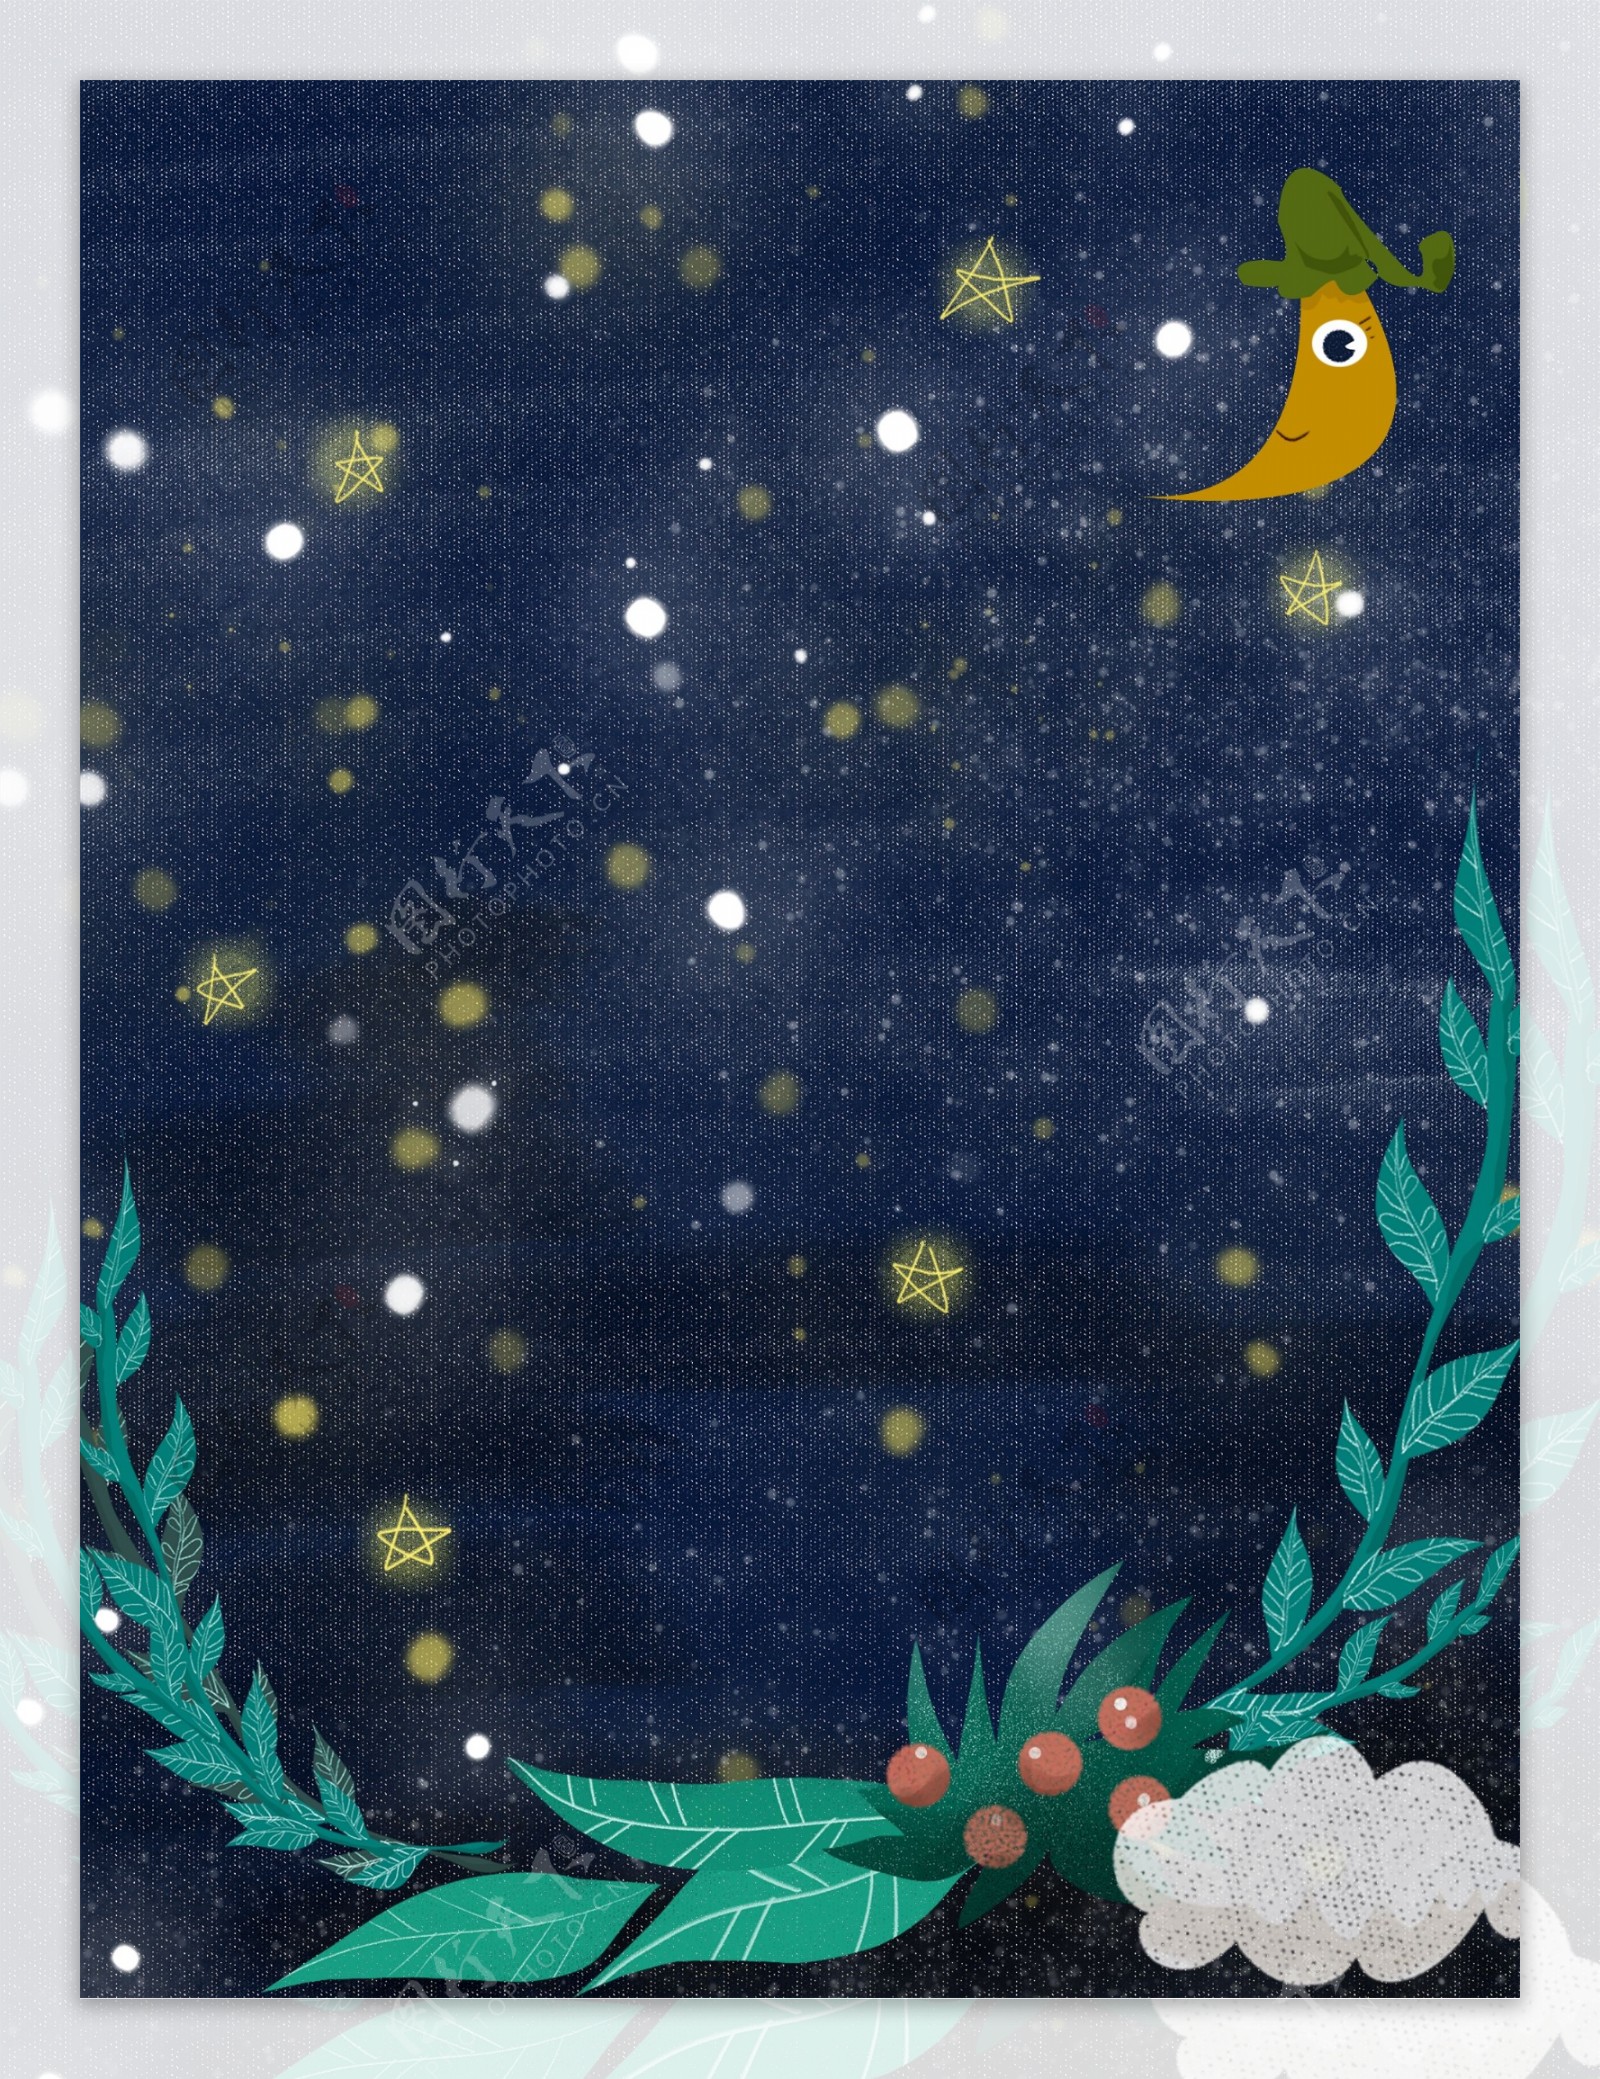 手绘夏季晚安星空背景设计